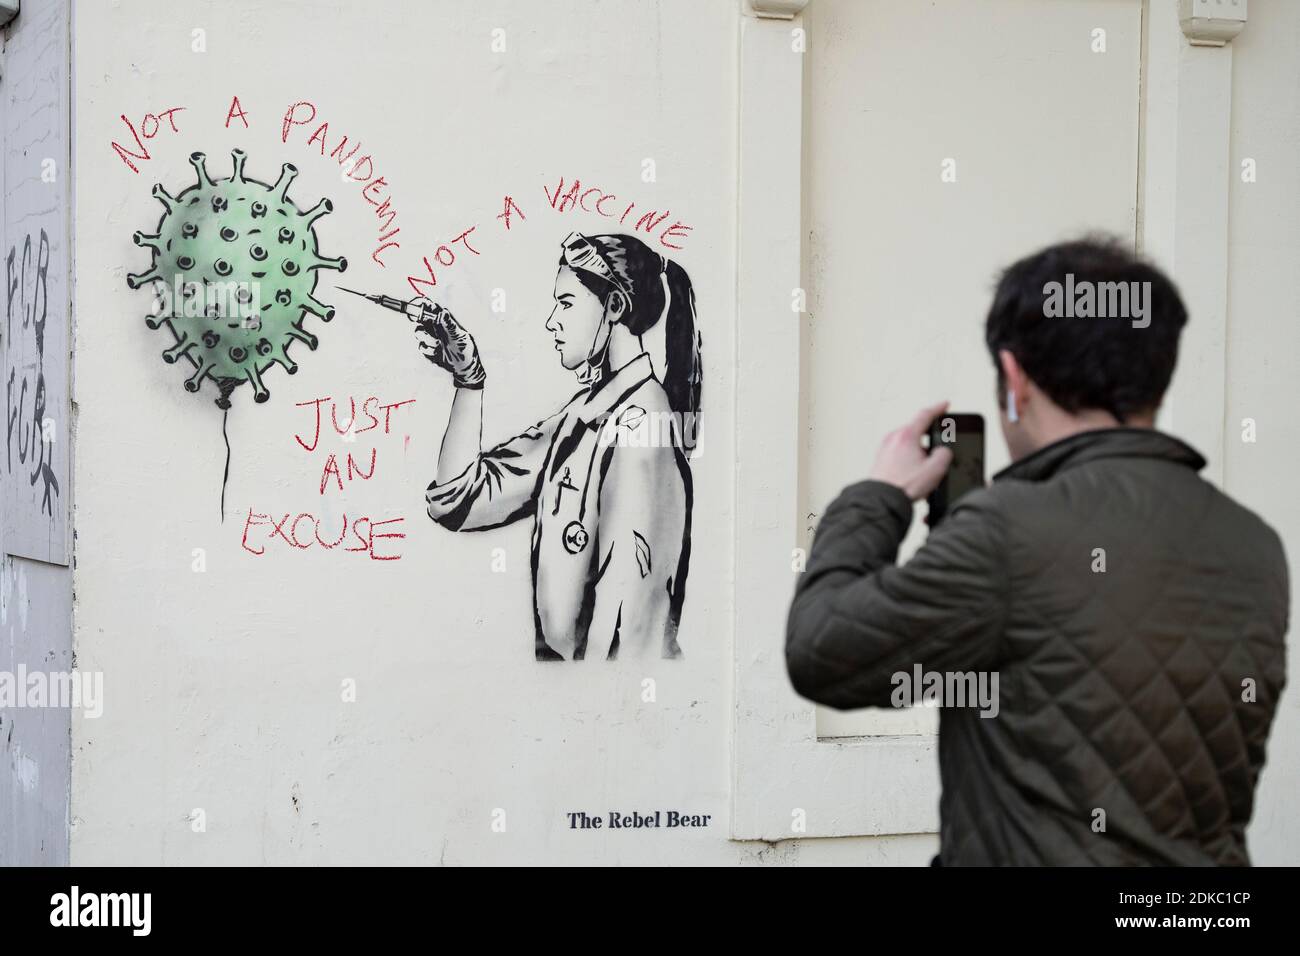 Edimburgo, Scozia, Regno Unito. 15 dicembre 2020. Street art della vaccinazione di Covid-19 da parte dell'artista di strada l'Orso Rebel di Edimburgo è vandalizzato dal protestore anti-vaccinazione. Iain Masterton/Alamy Live News Foto Stock